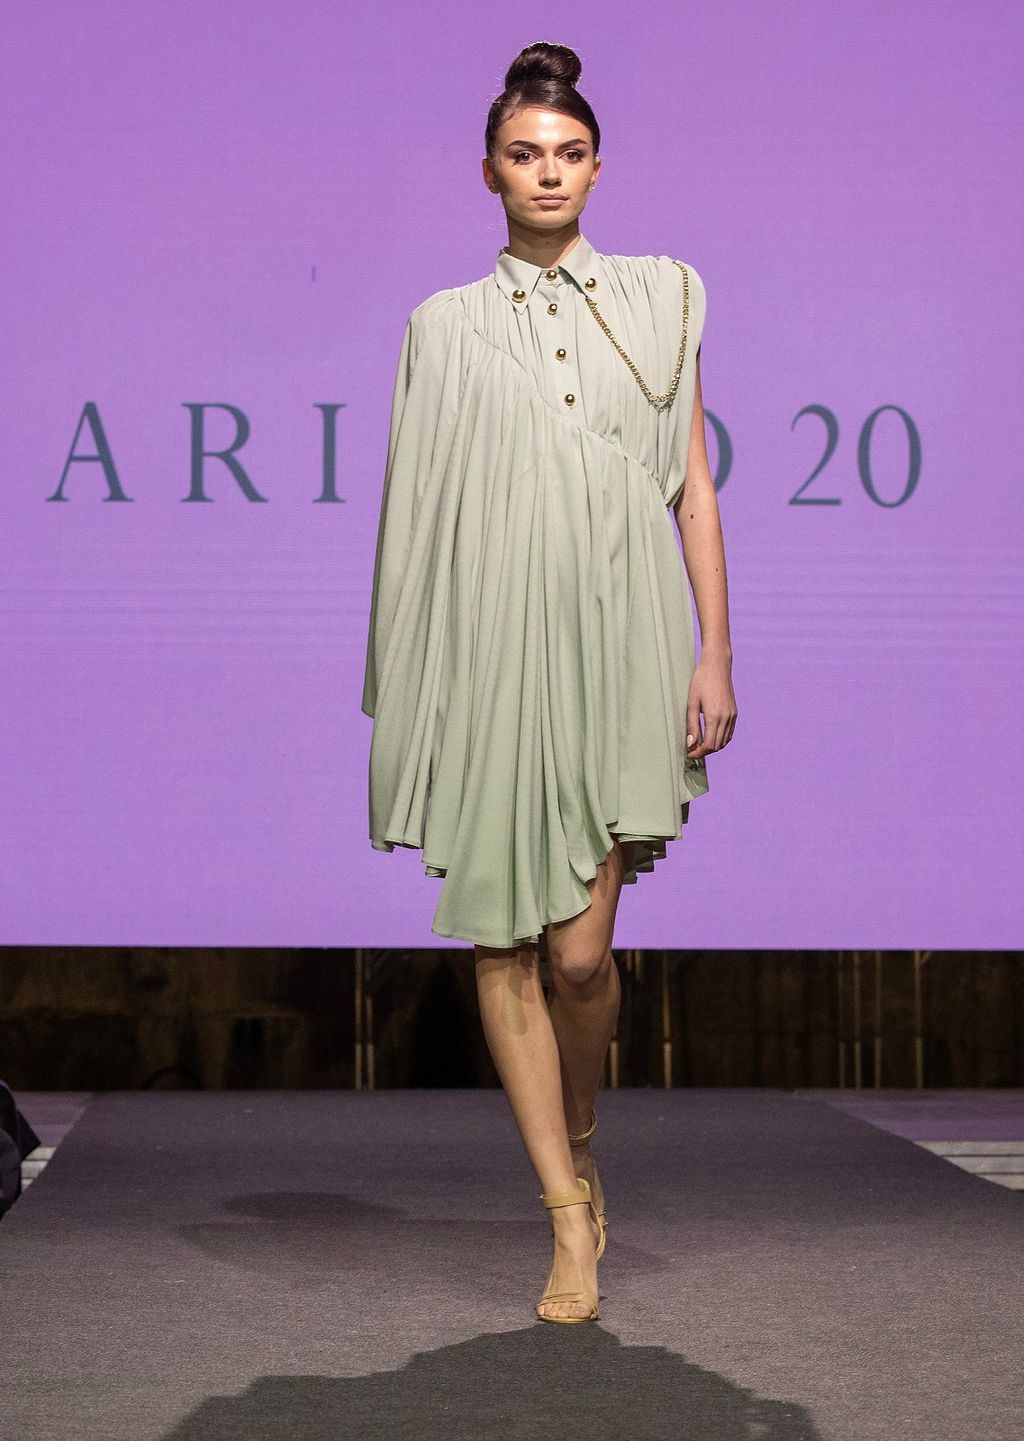 Haljina je pokazana na modnoj reviji povodom 20-e godišnjice rada brenda Arileo